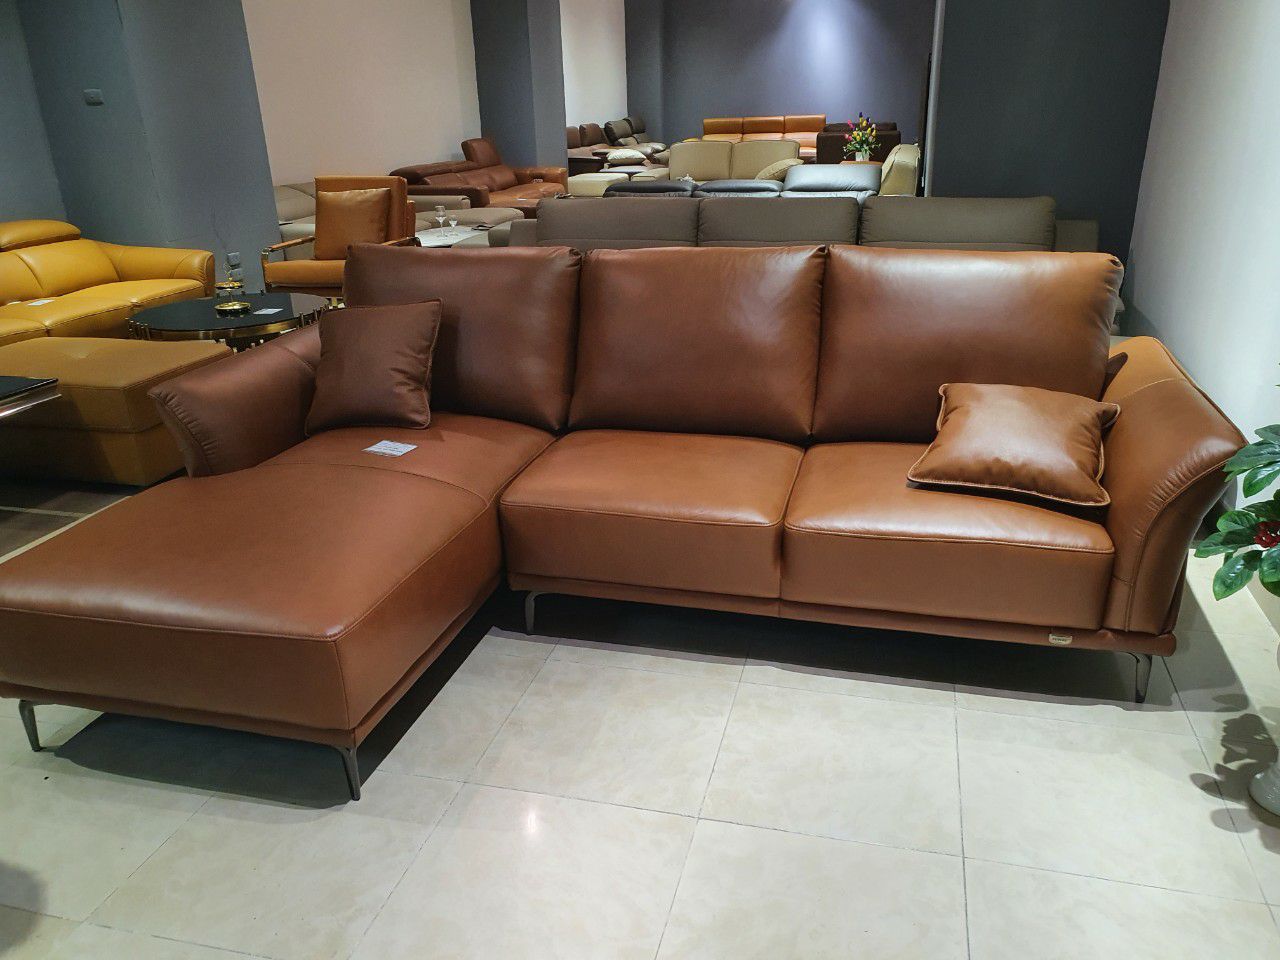 Hướng dẫn cách chọn sofa phòng giám đốc thể hiện sự đẳng cấp - Ảnh 2